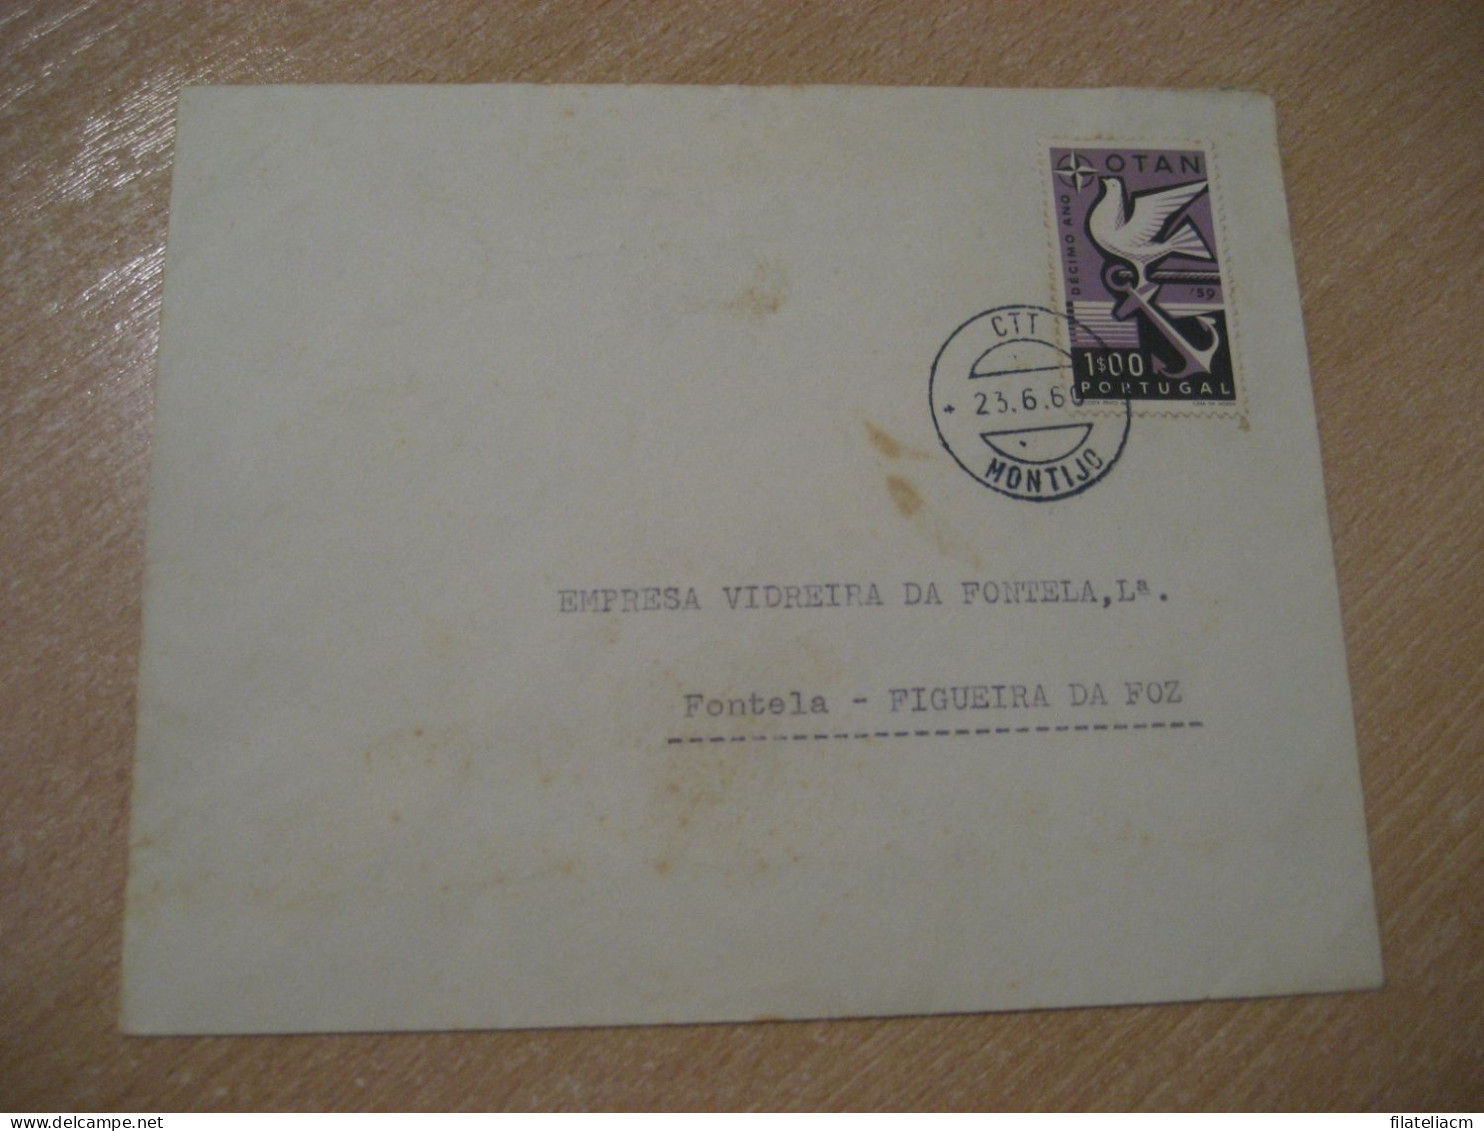 MONTIJO 1960 To Figueira Da Foz NATO OTAN Militar Stamp Cancel Cover PORTUGAL - NATO